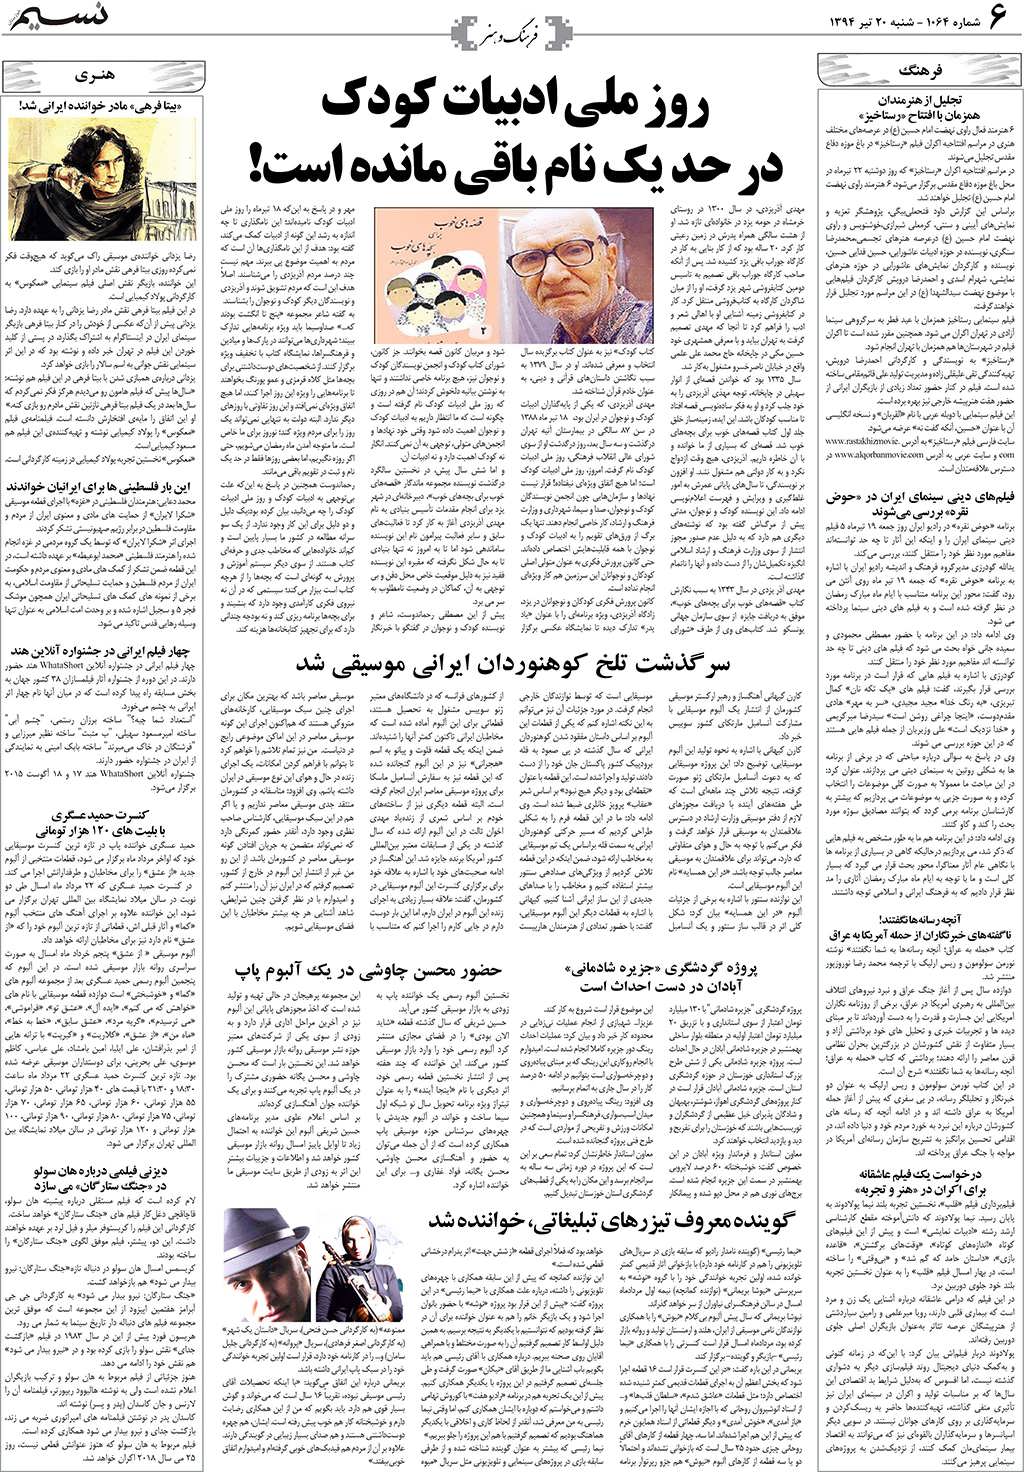 صفحه فرهنگ و هنر روزنامه نسیم شماره 1064